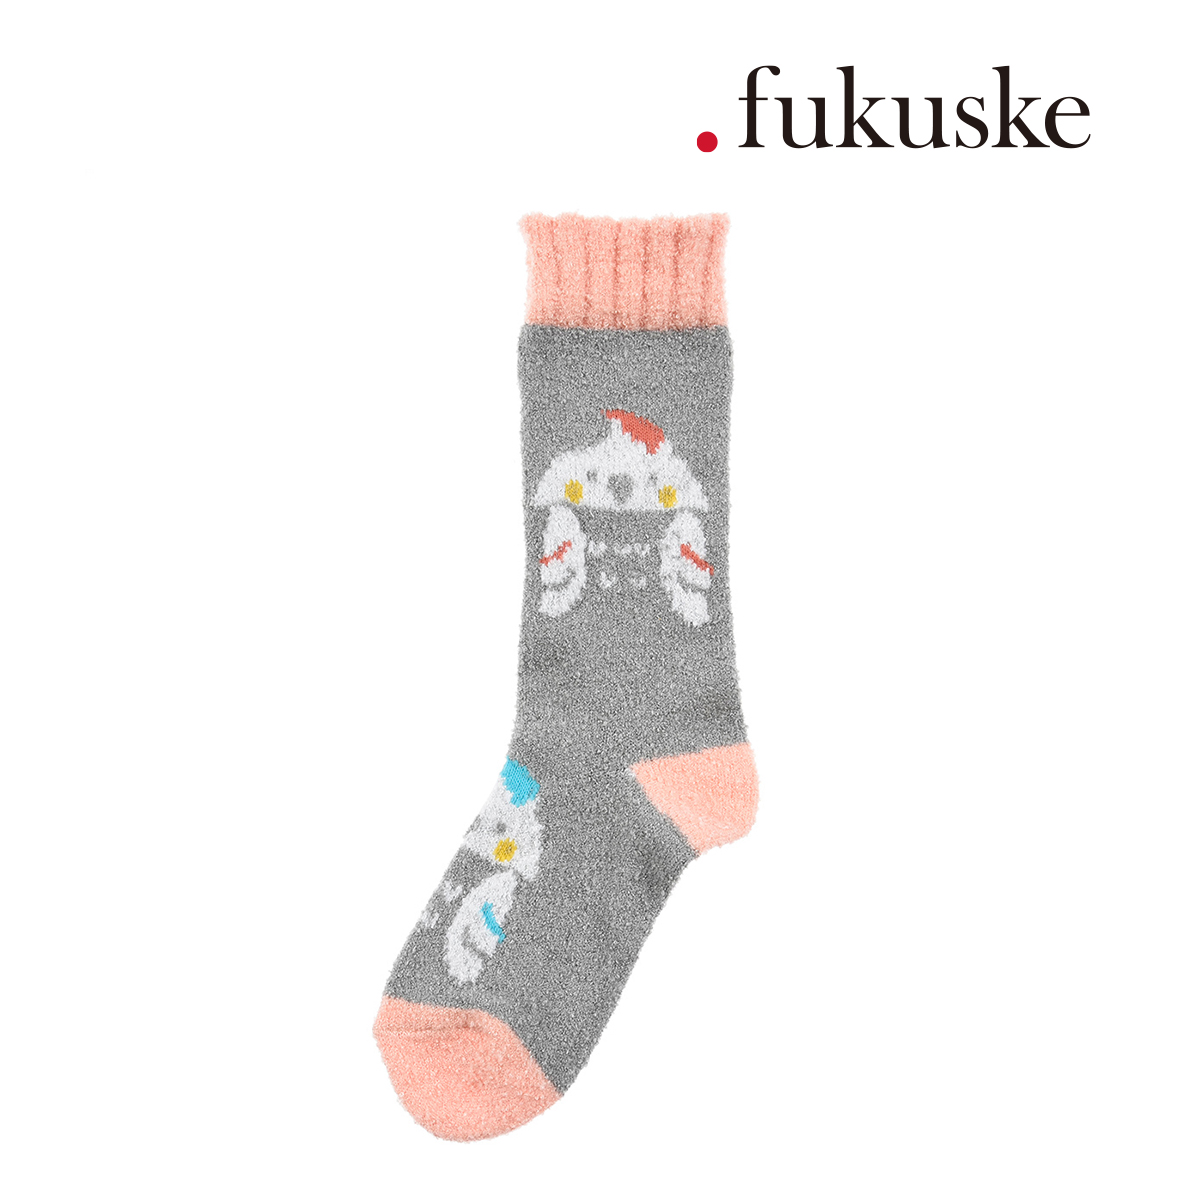 靴下 レディース fukuske オカメインコ モコモコ ルームソックス クルー丈 2230-601 婦人 女性 fukuske フクスケ 福助  公式 :23-2230-601:福助公式オンラインストア 通販 